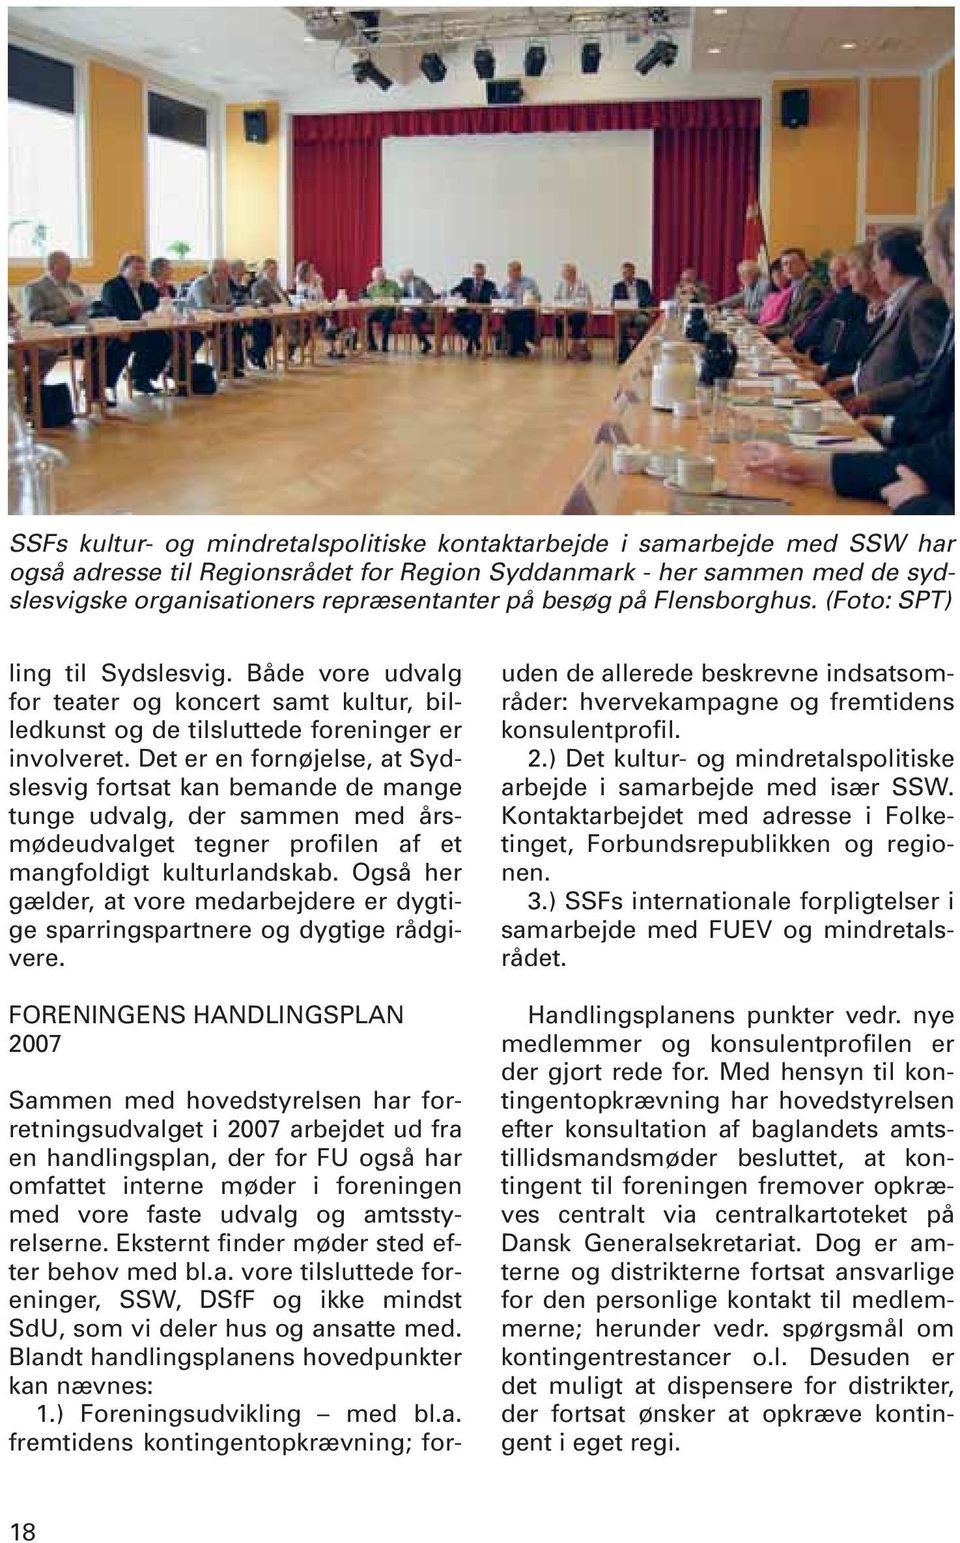 Det er en fornøjelse, at Sydslesvig fortsat kan bemande de mange tunge udvalg, der sammen med årsmødeudvalget tegner profilen af et mangfoldigt kulturlandskab.